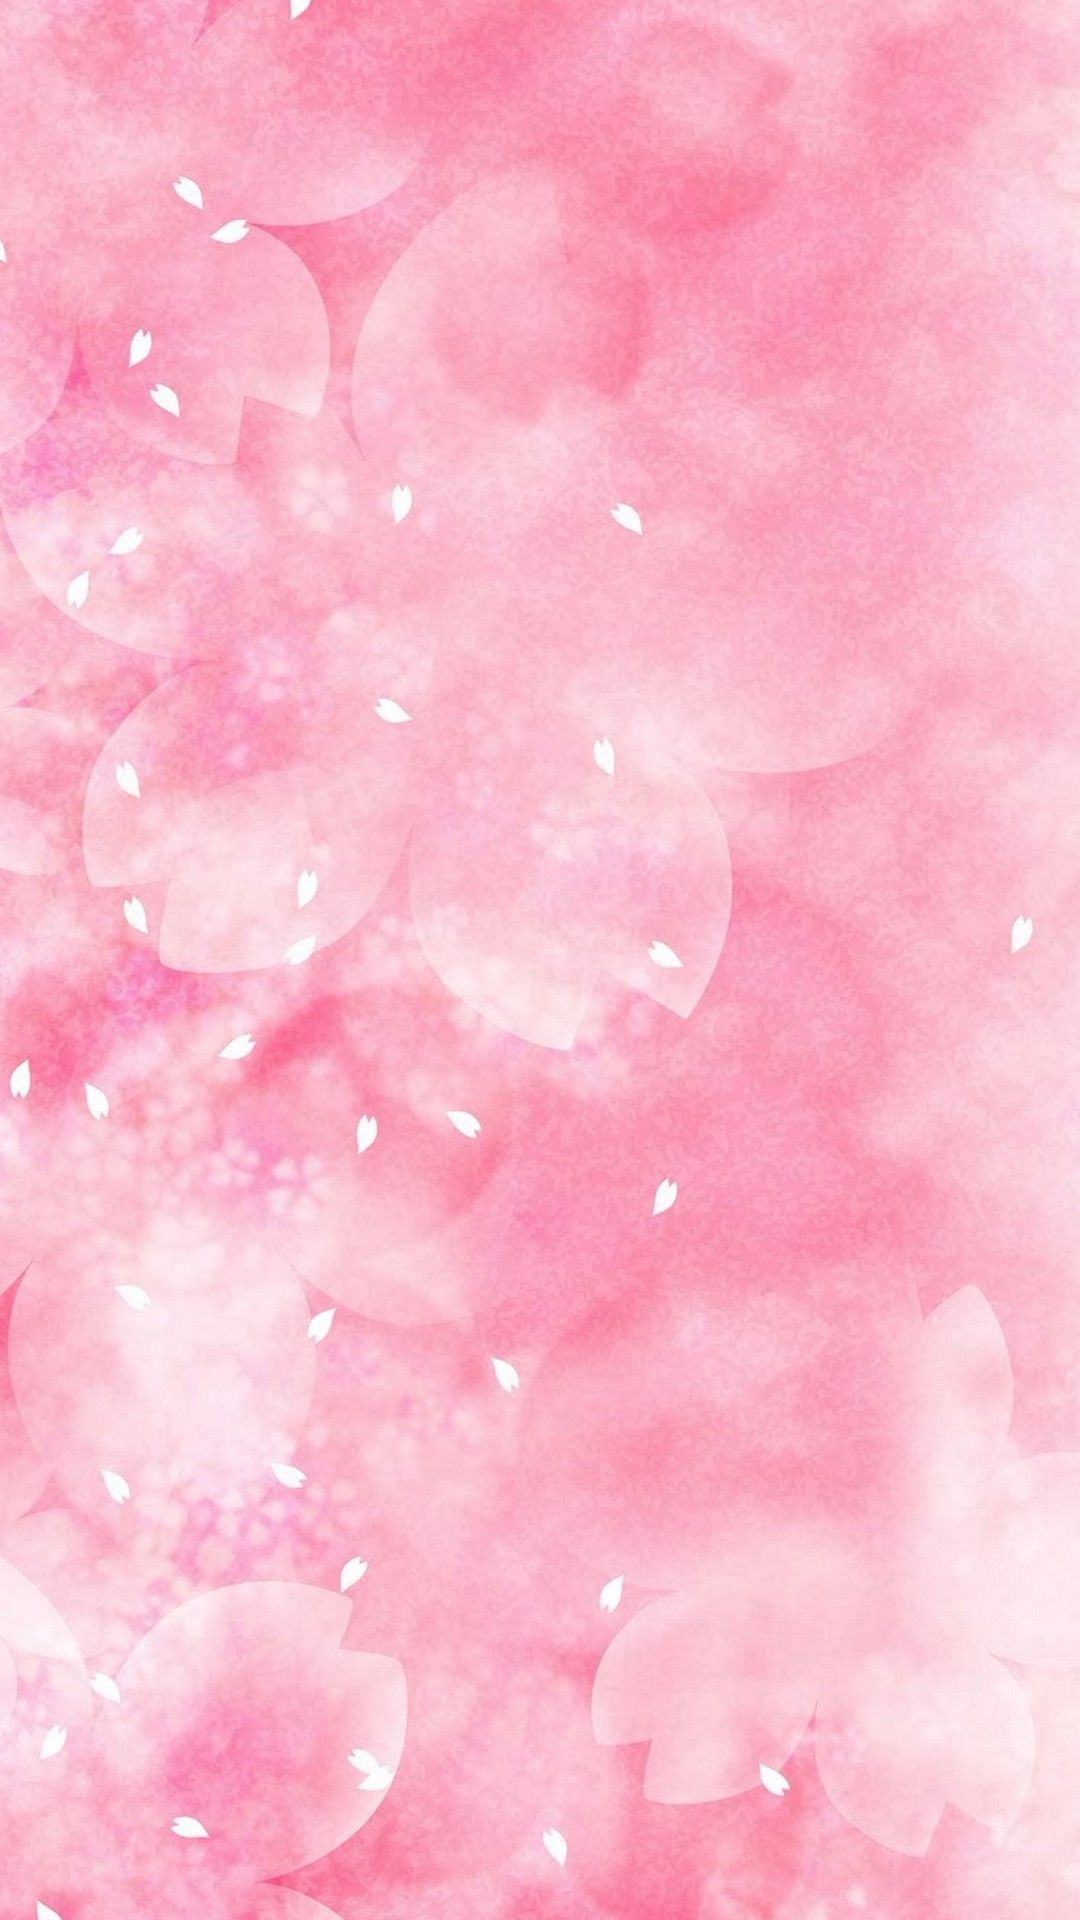 Cute Pink Wallpaper iPhone. Best HD Wallpaper. Pink wallpaper android, Cute flower wallpaper, Phone wallpaper pink